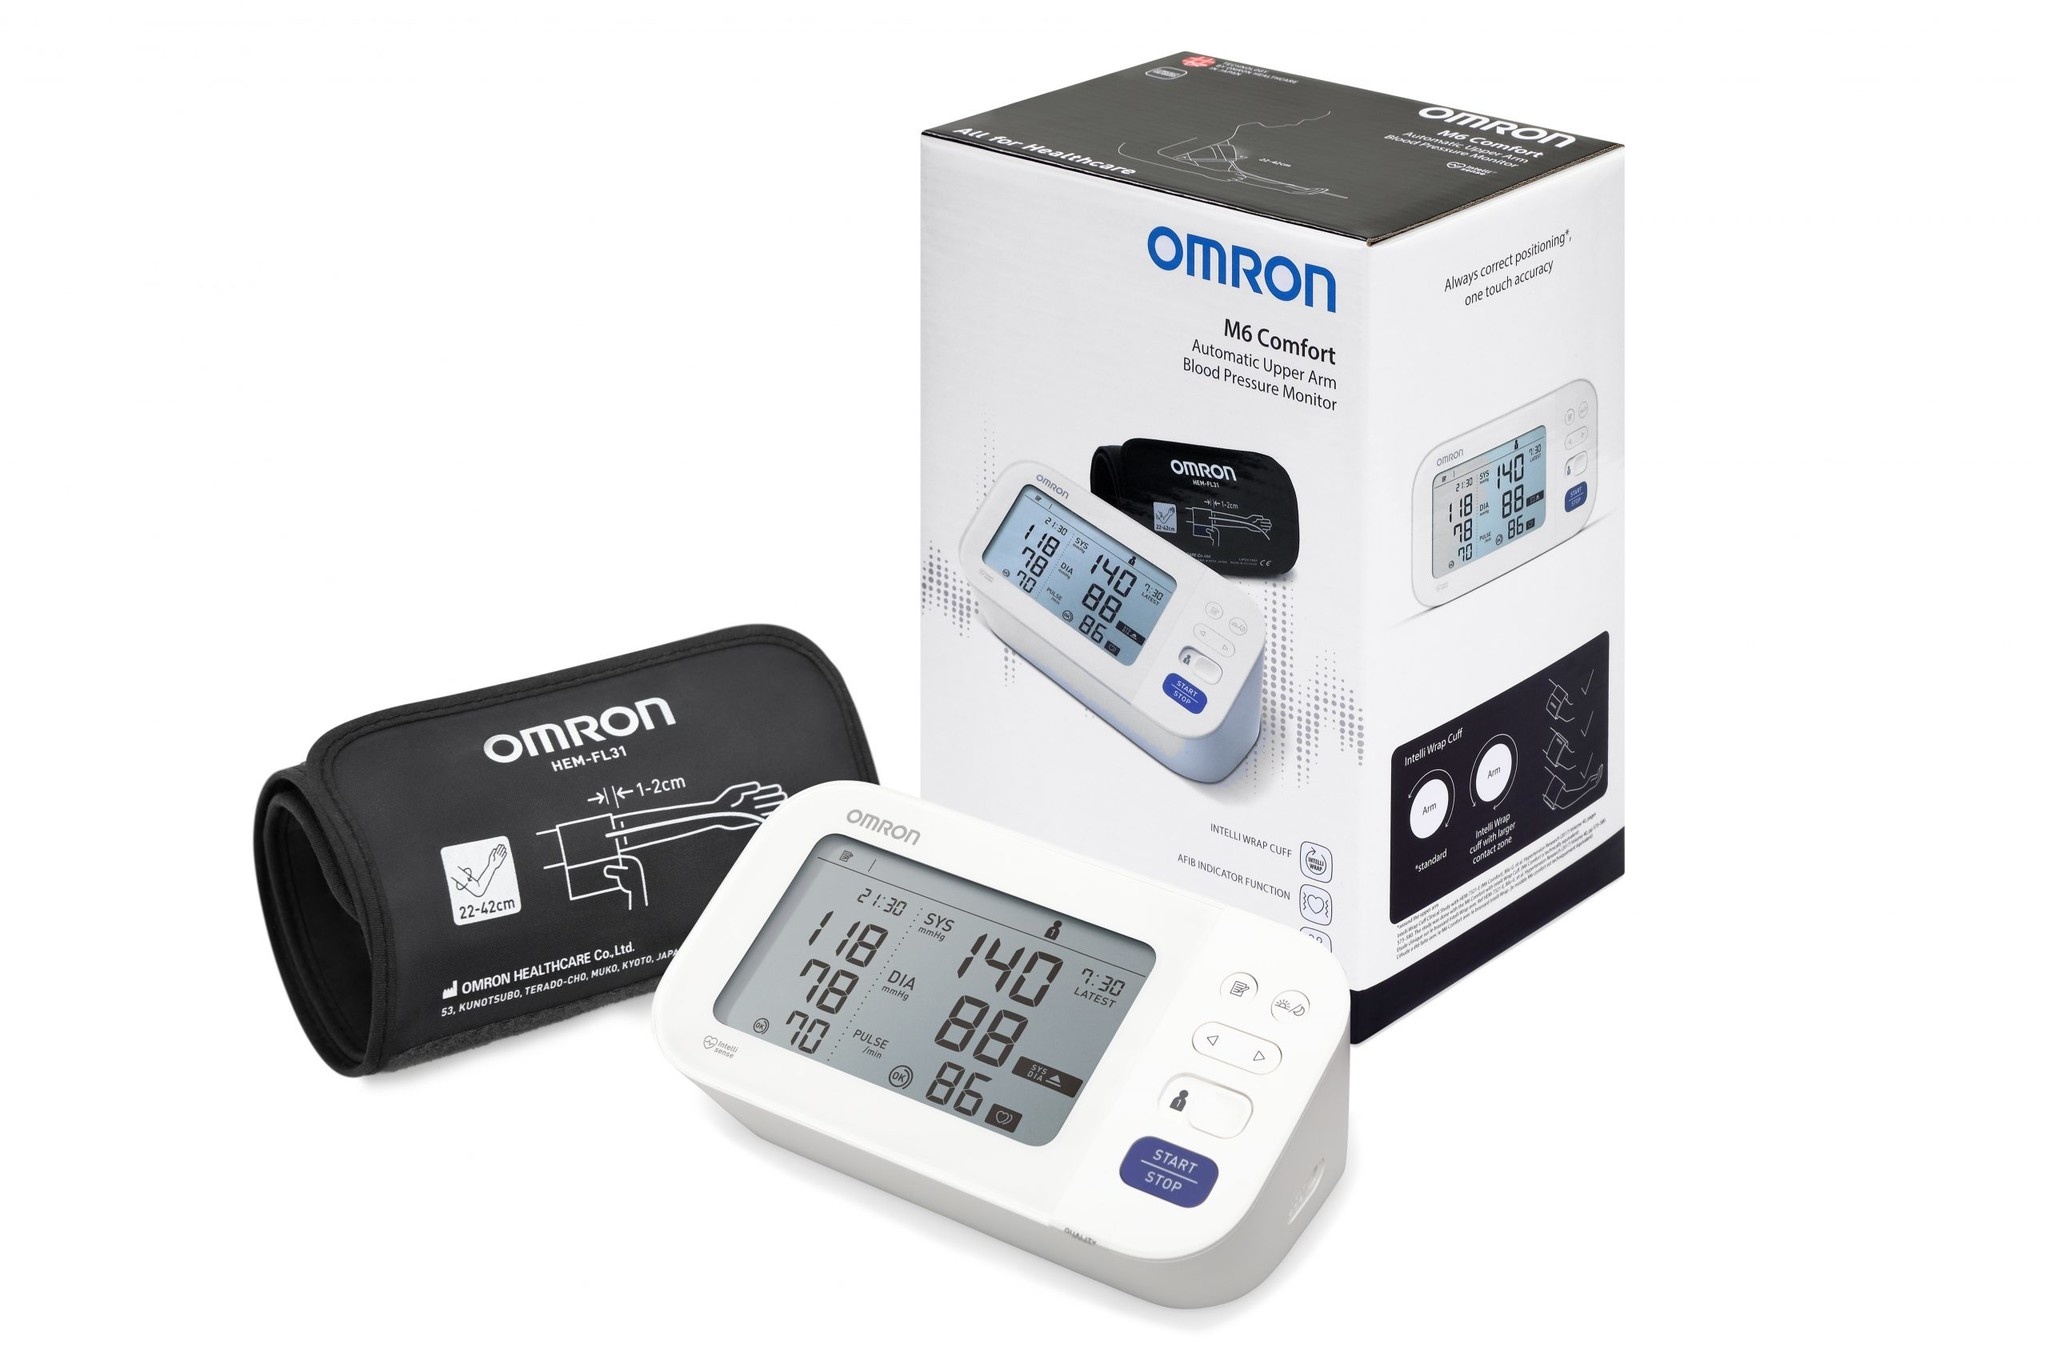 Omron-Blutdruckmessgerät M6 Comfort